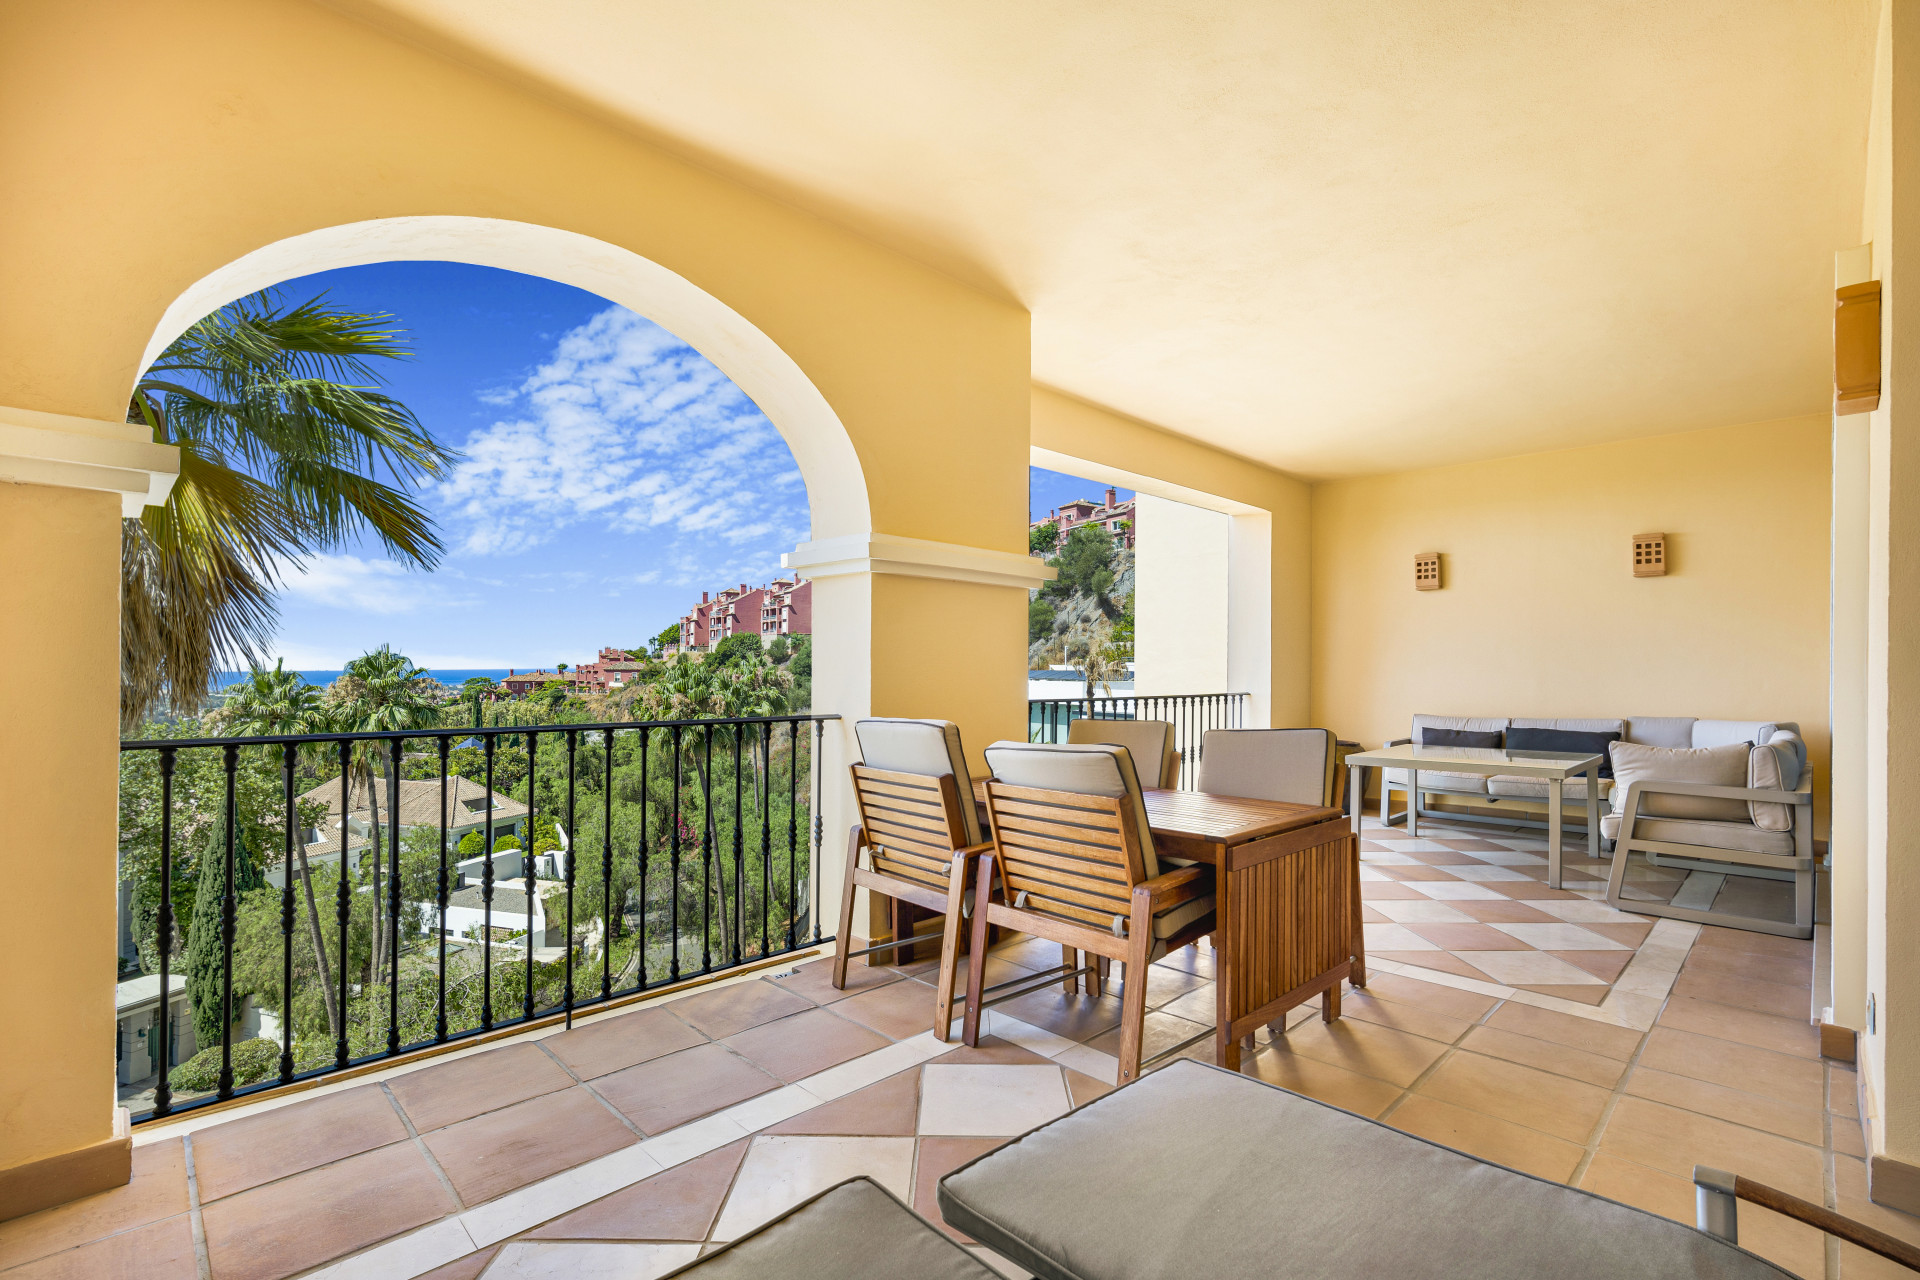 Maravilloso apartamento con orientación sur en el complejo residencial cerrado Buenavista II, La Quinta, con vistas panorámicas al mar